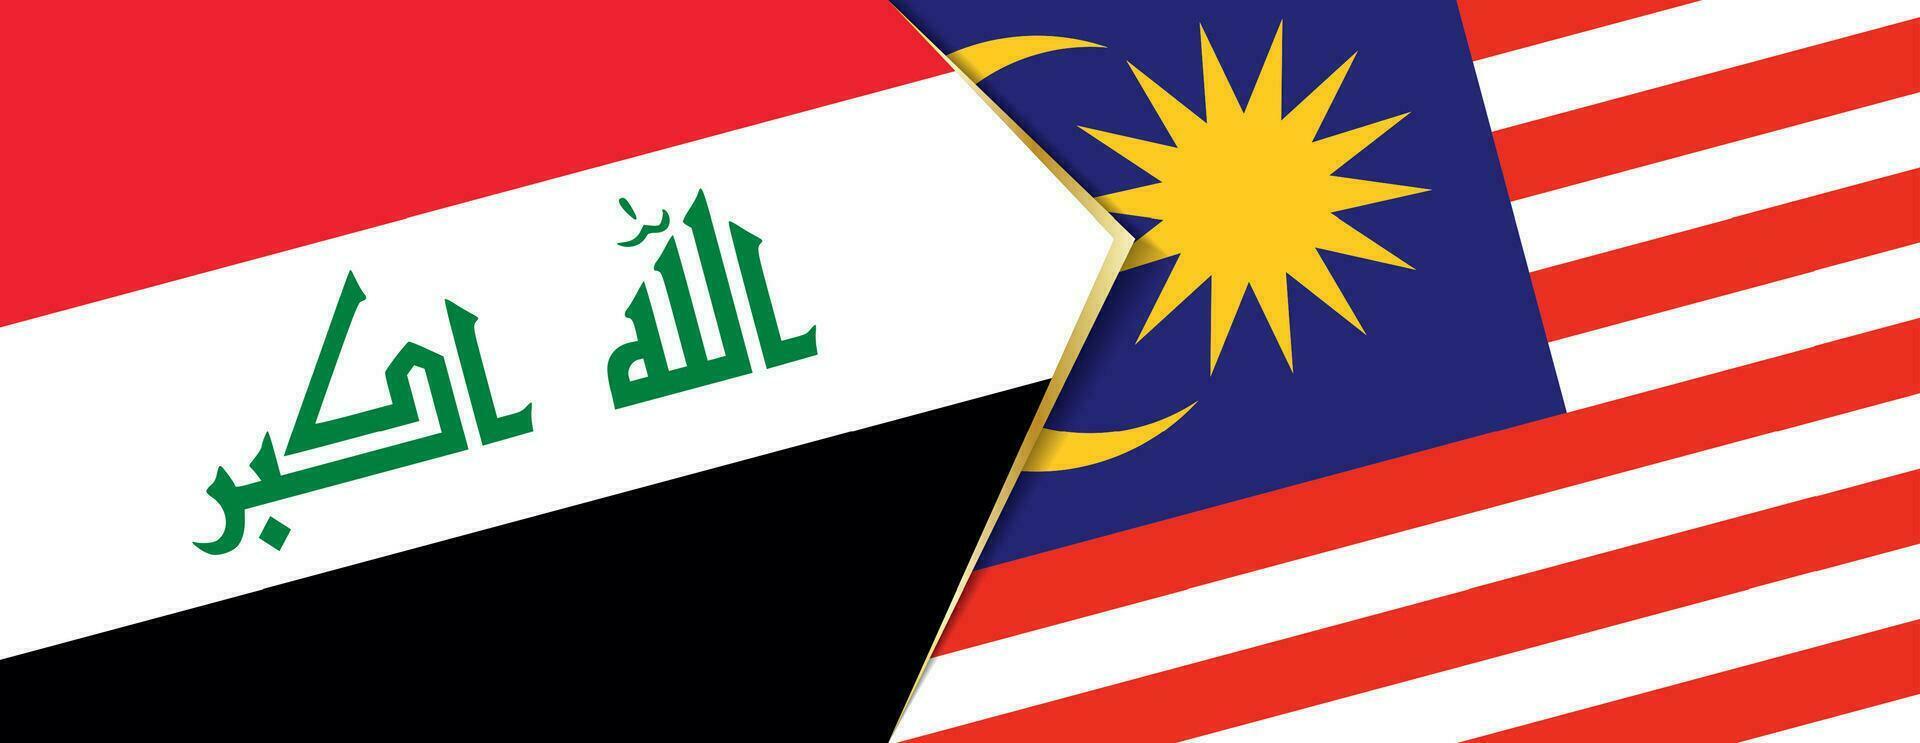 Irak et Malaisie drapeaux, deux vecteur drapeaux.